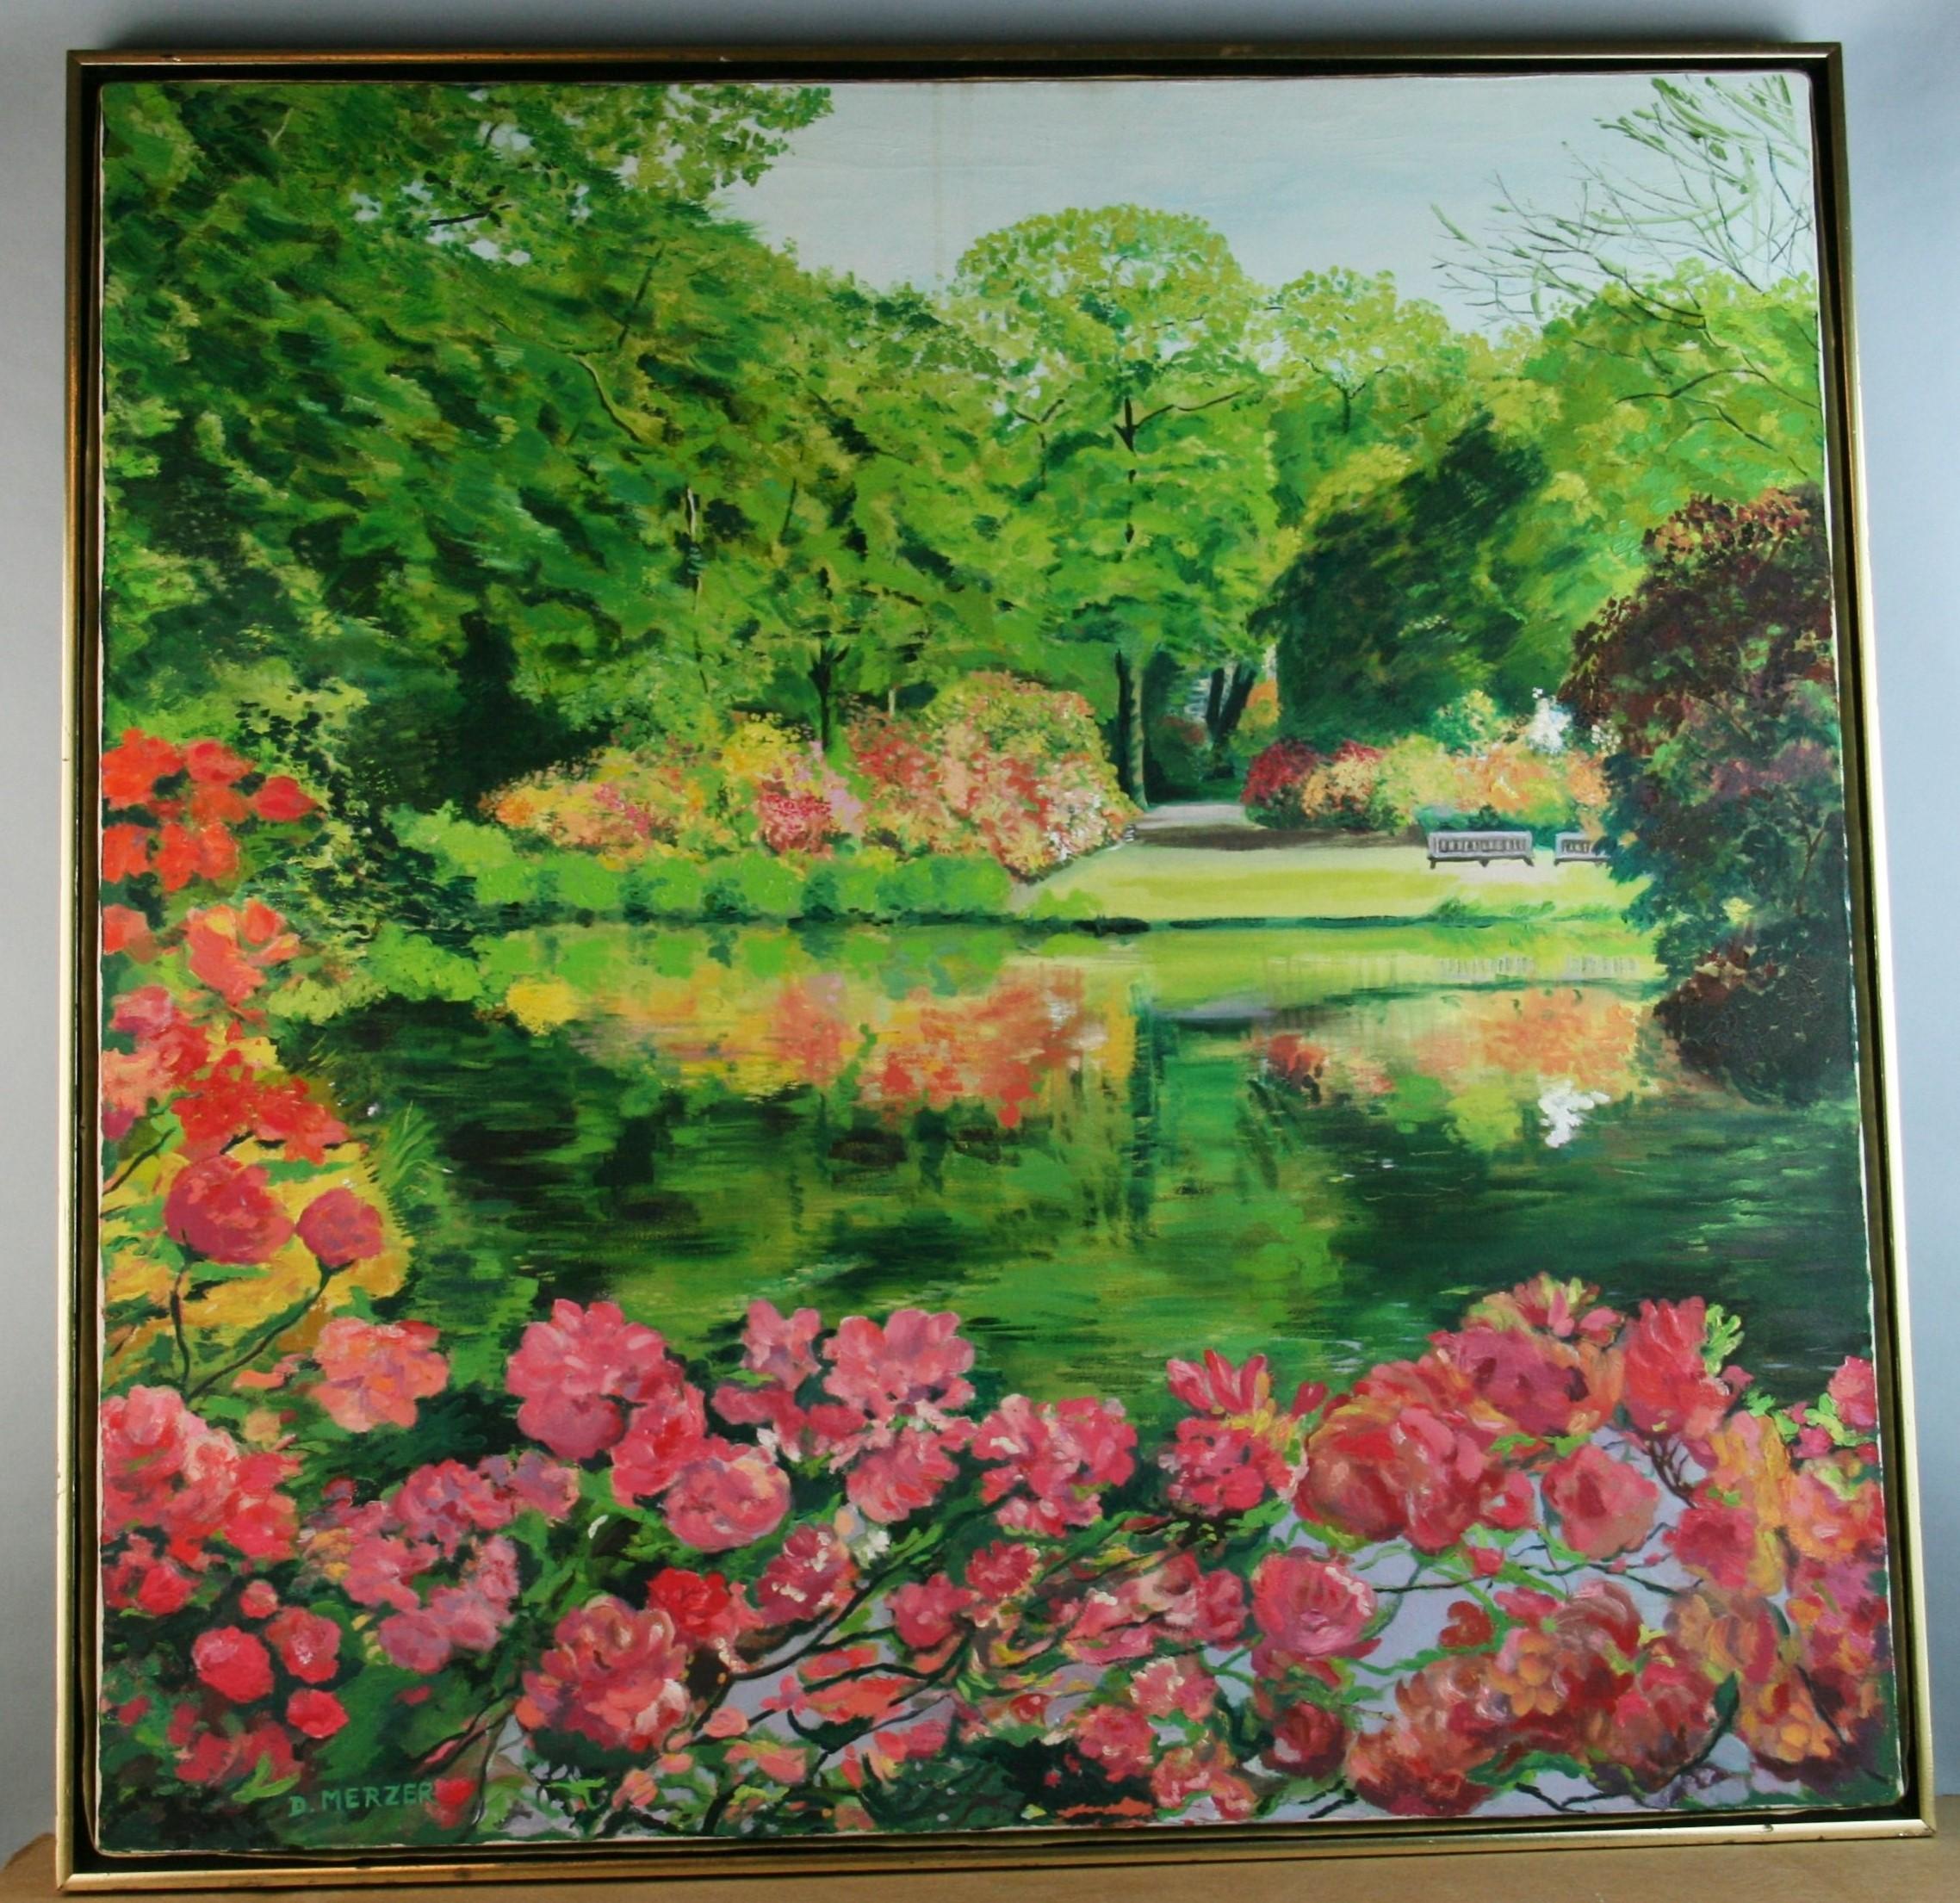 4049 Grand jardin de fleurs impressionniste moderne.
Signé D.Merzer, daté d'août 1984 au verso
Dans un cadre en bois moderne.